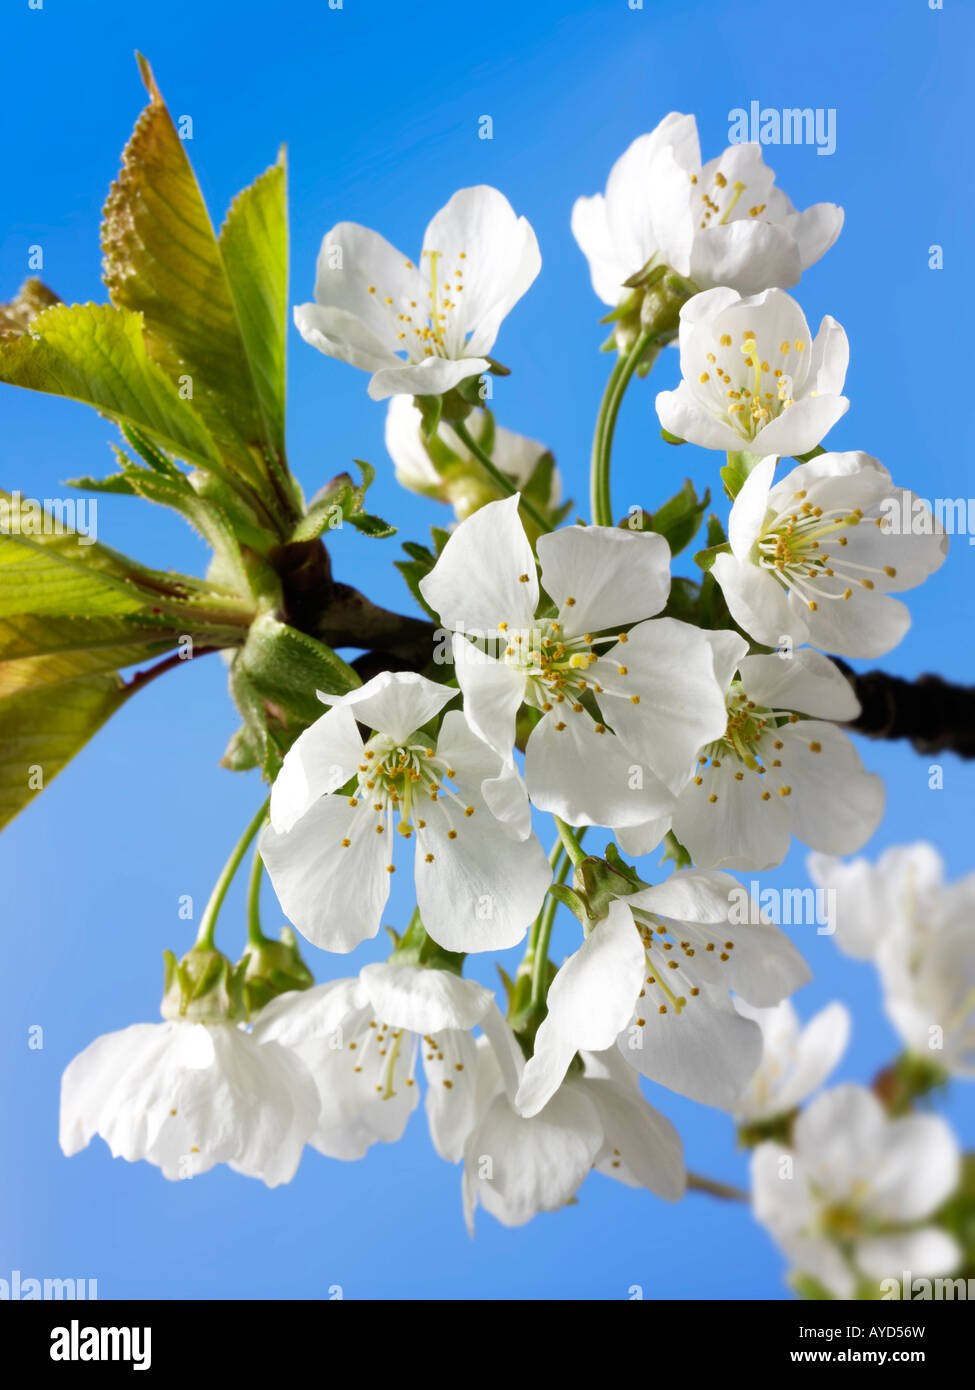 Photos de fleurs de cerisier blanc frais, les fleurs et les pétales de frais un cerisier Banque D'Images